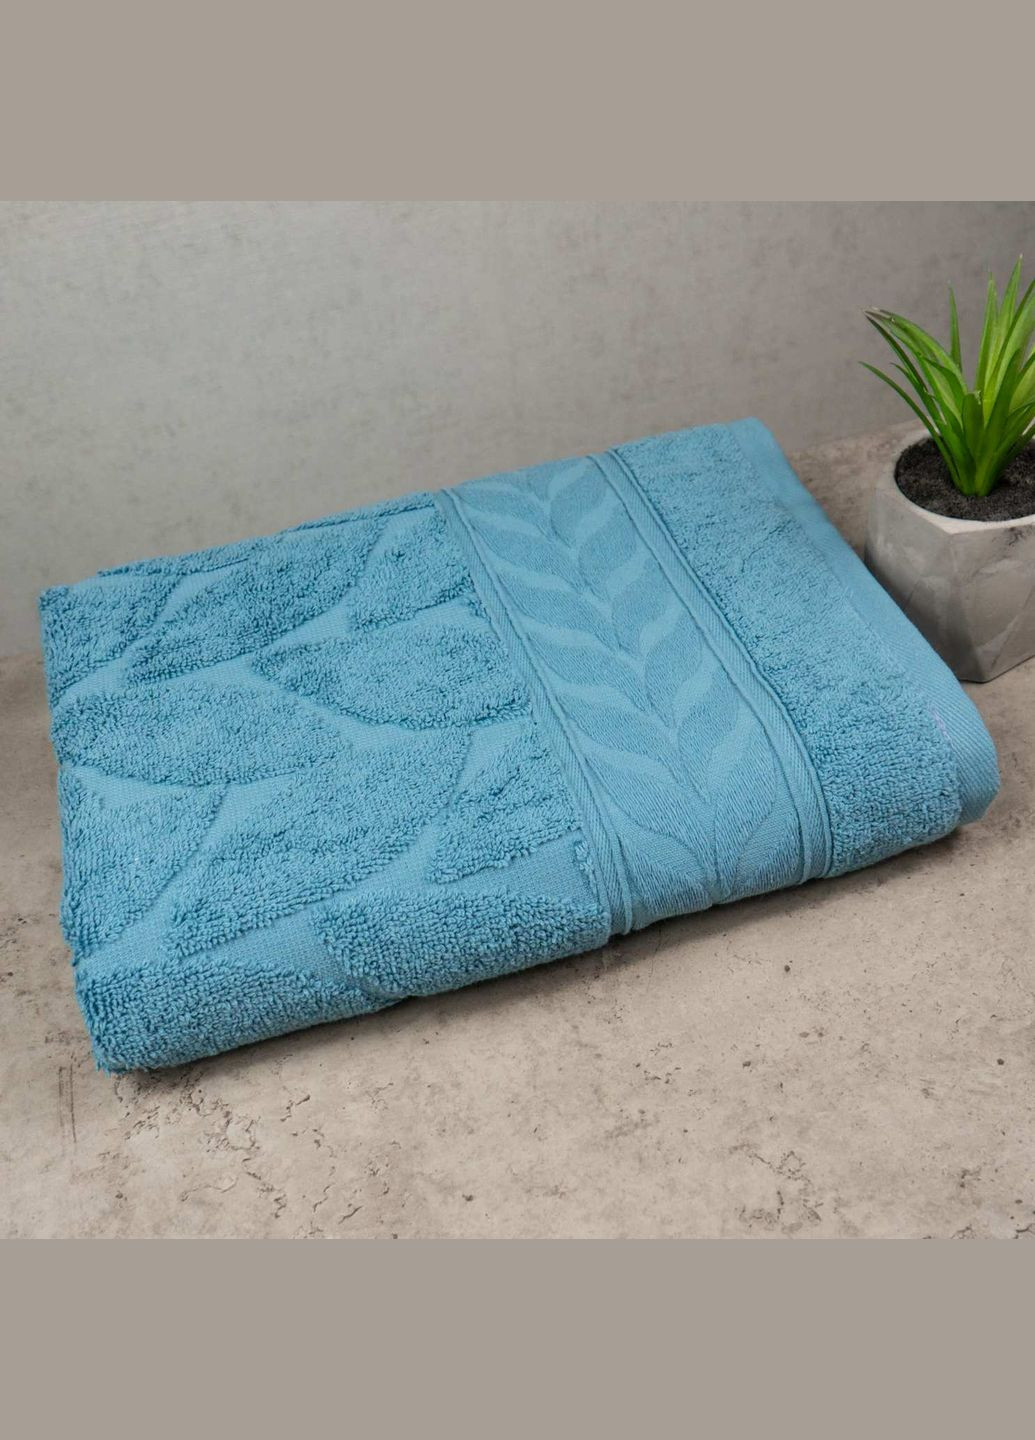 GM Textile полотенце махровое 50x90см премиум качества листья 550г/м2 () бирюзовый производство -